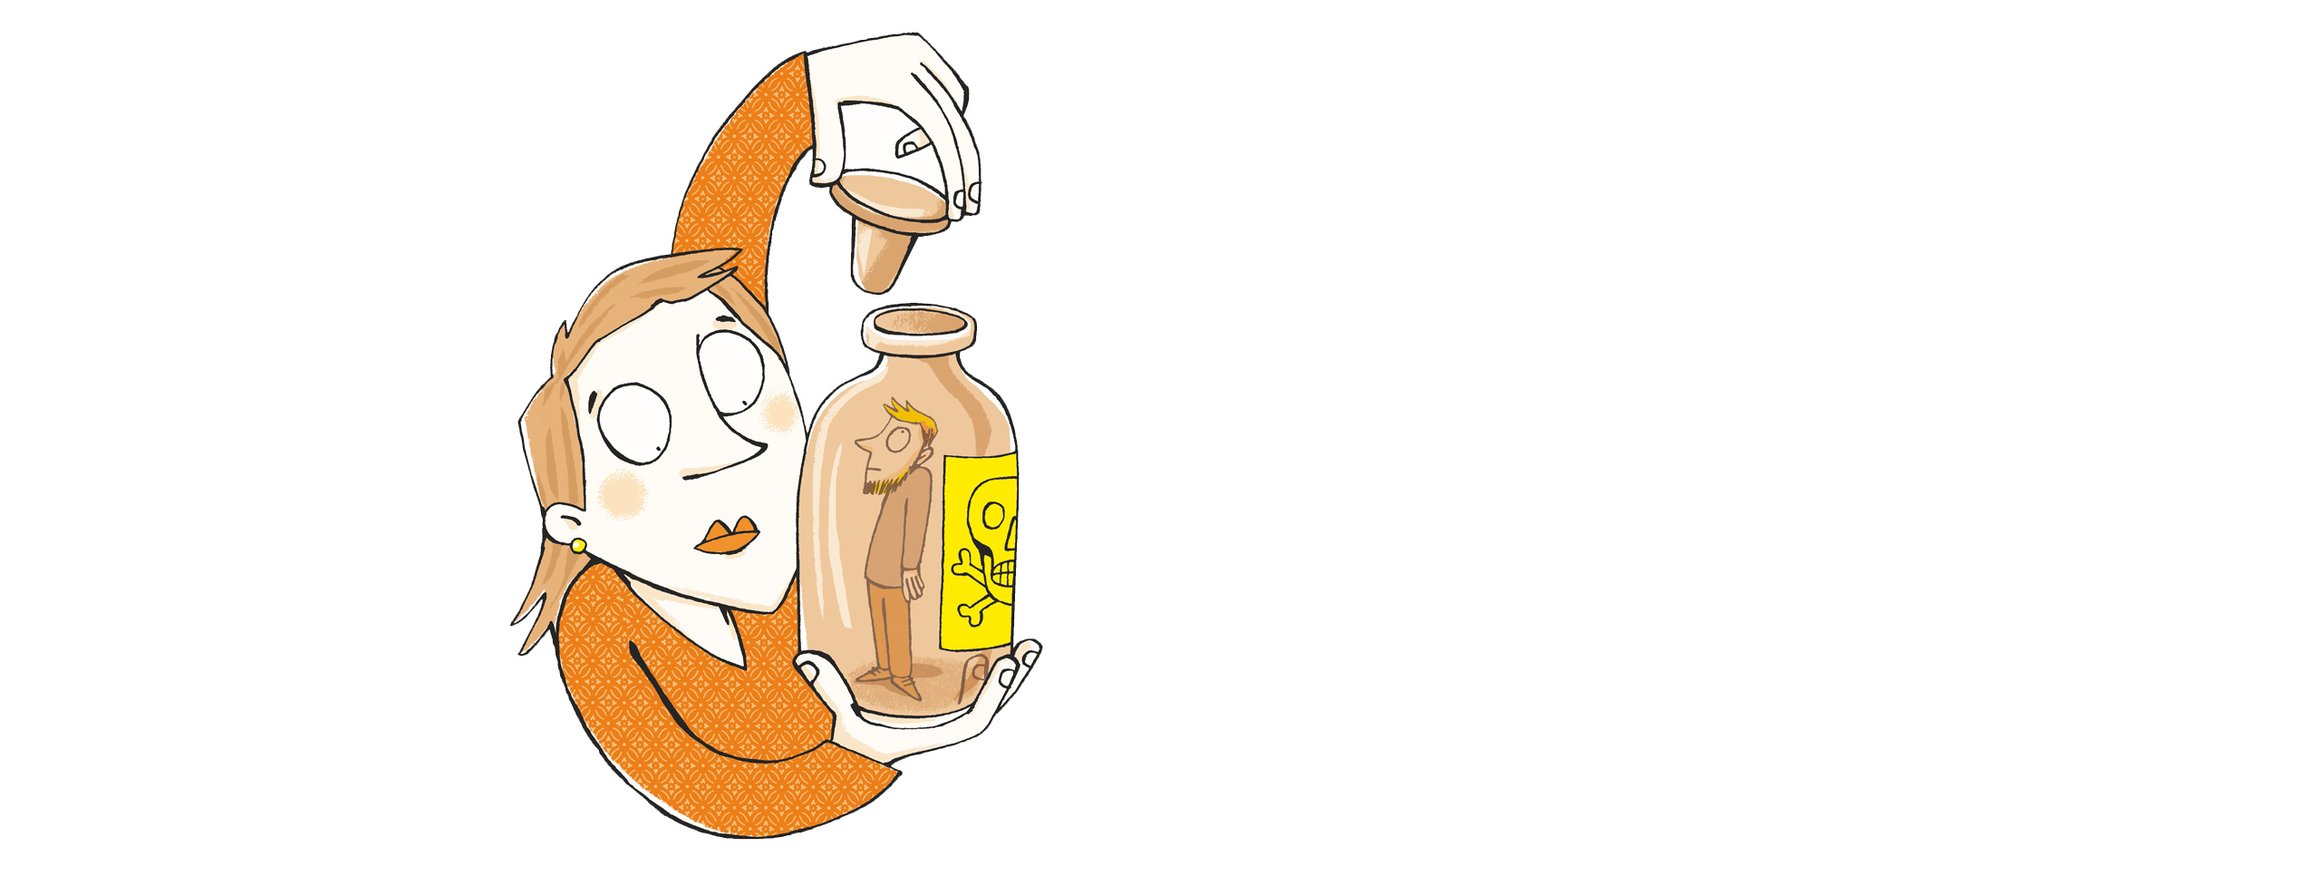 Die Illustration zeigt eine Frau, die eine Glasflasche in er Hand hält und sie verschließt, während darin ist ein Mann zu sehen und auf der Falsche das Gift-Symbol ist